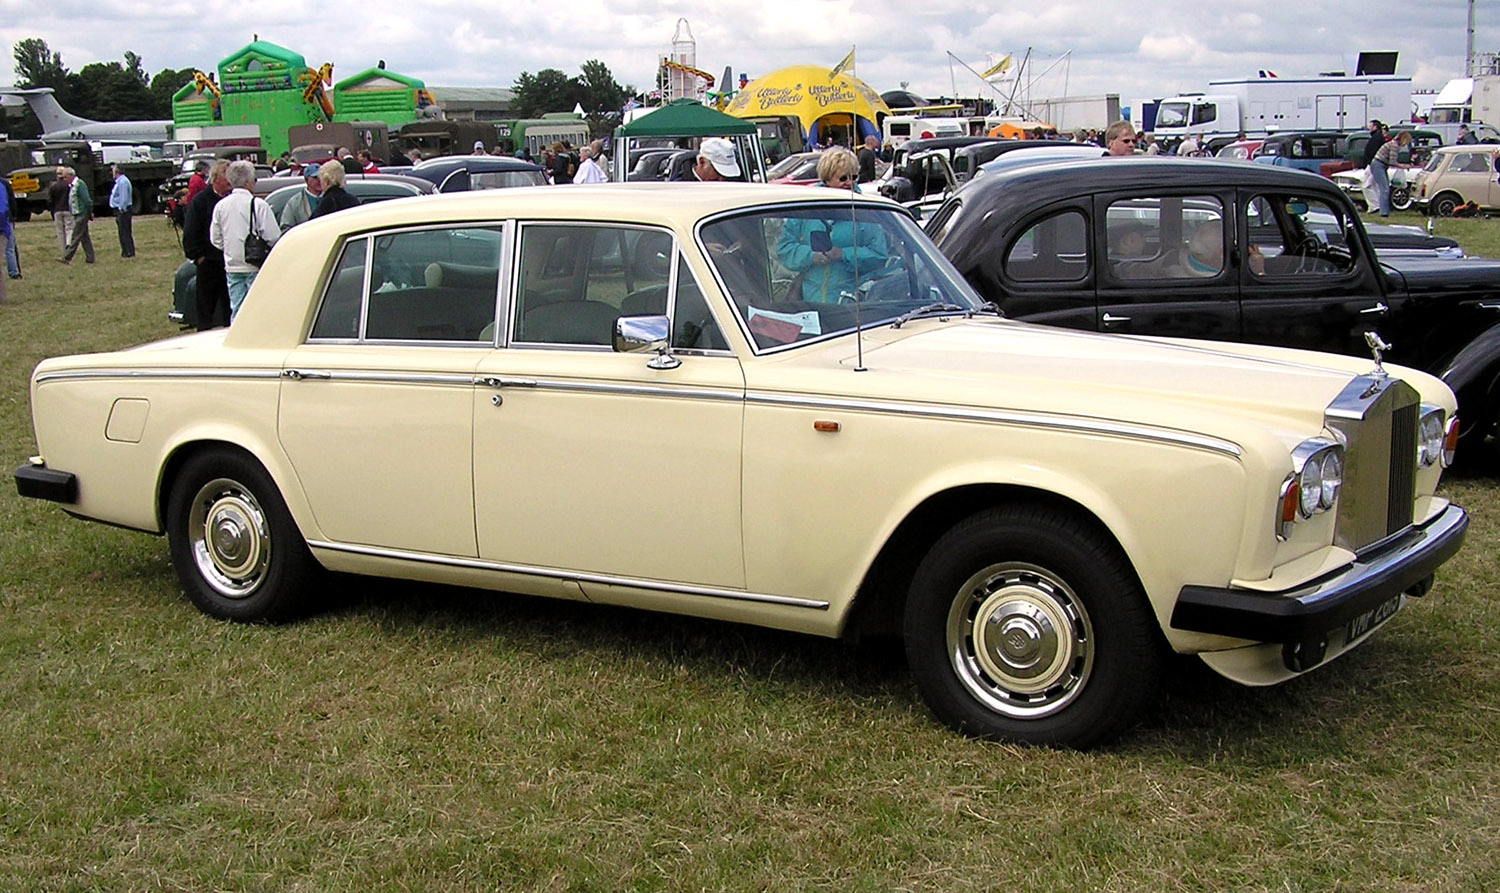 Rolls Royce Silver Shadow II